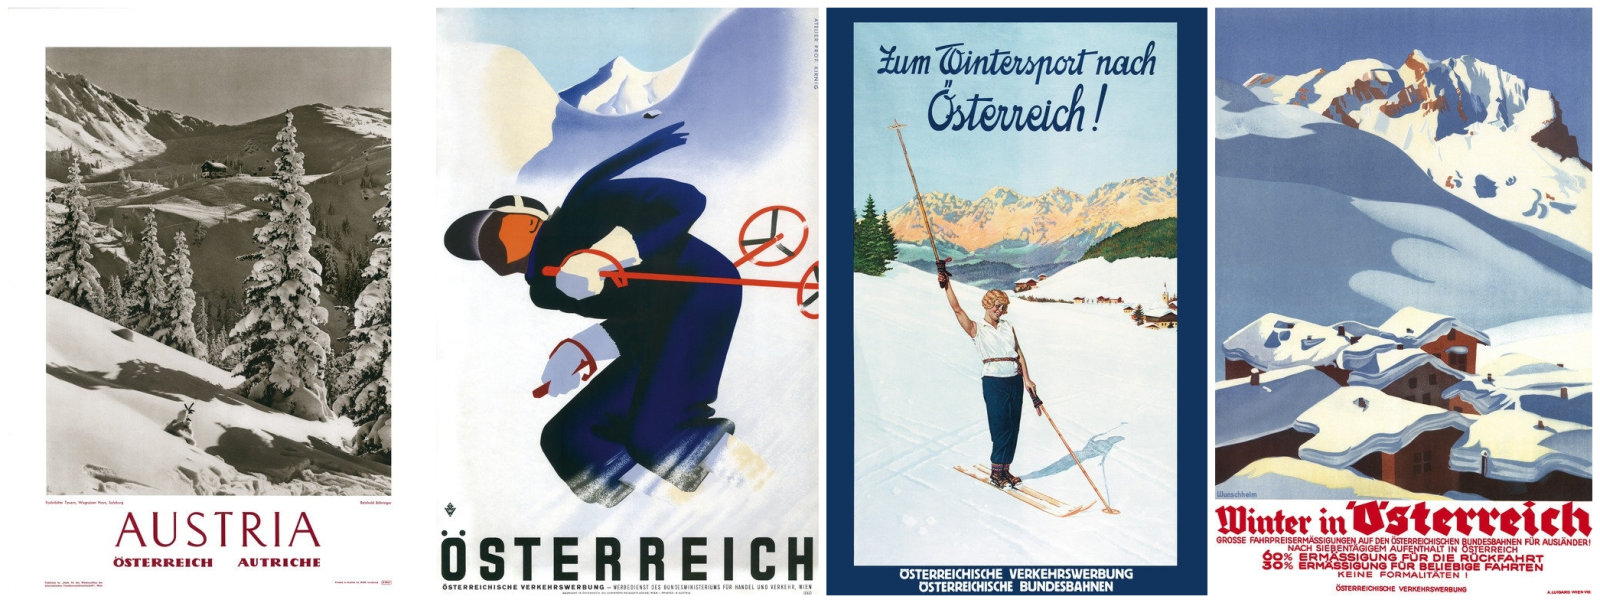 Ausztriát reklámozó retró plakátok